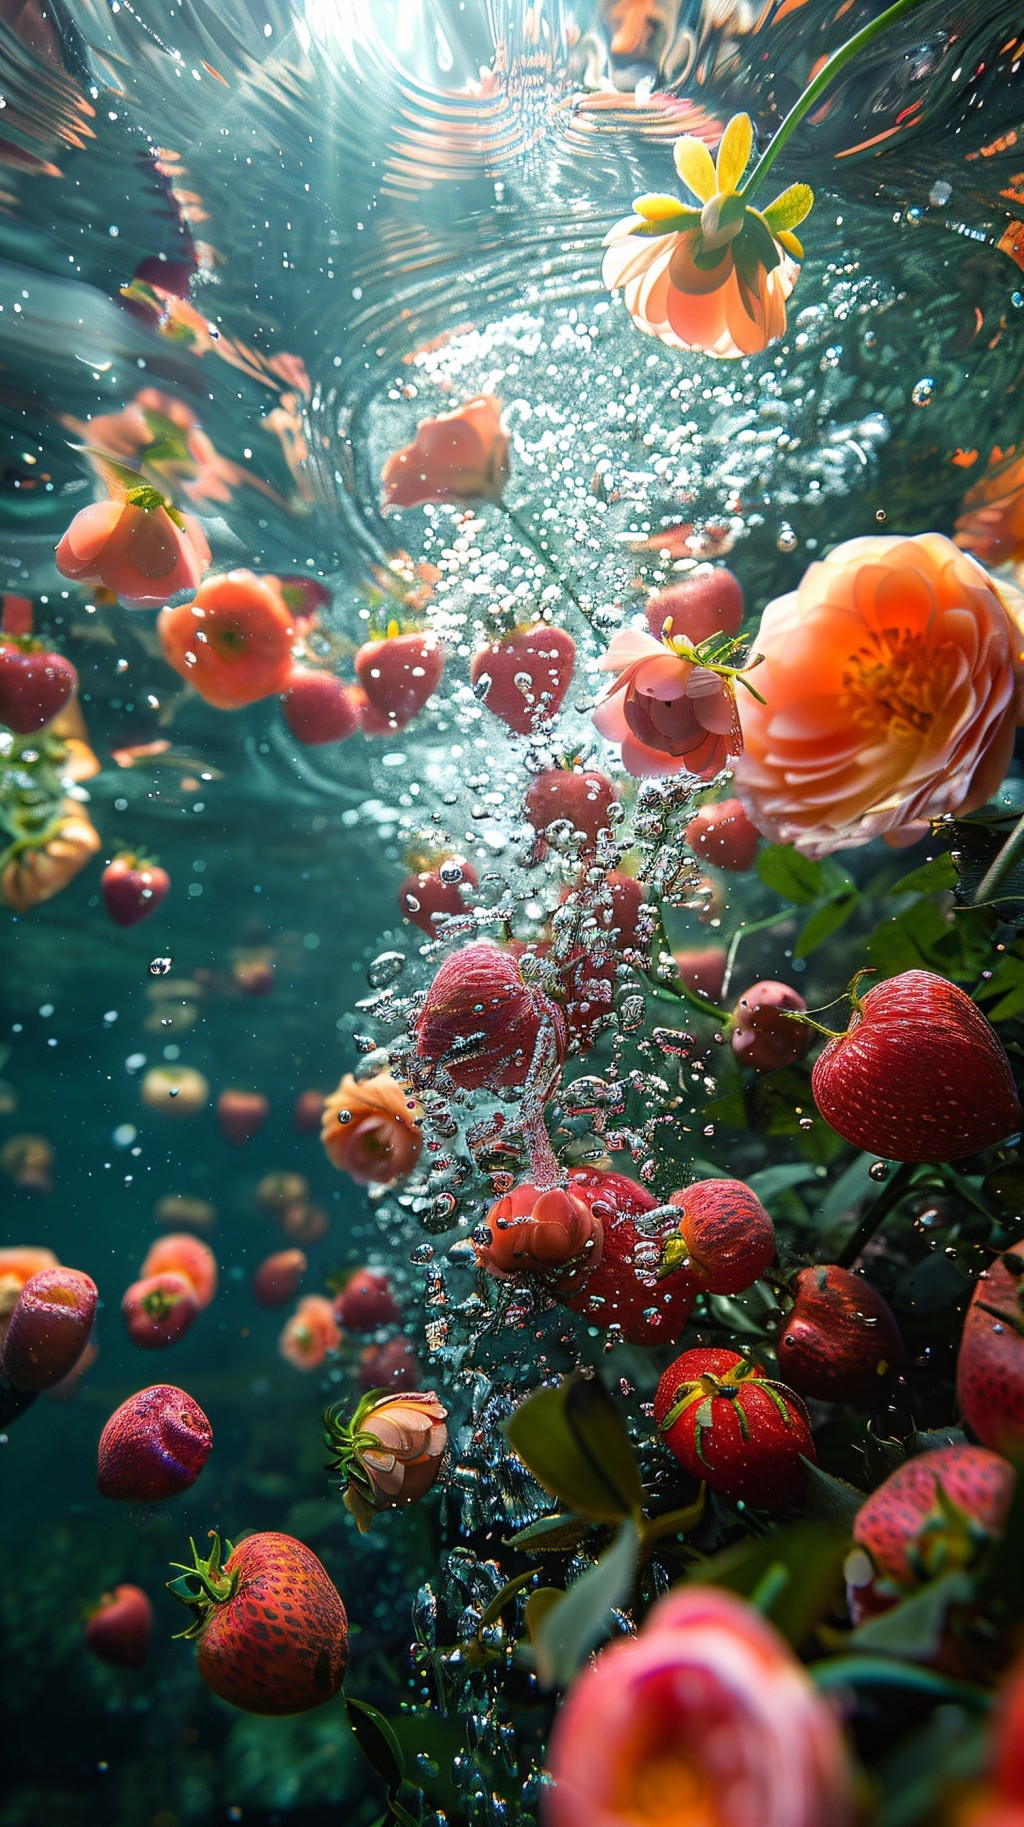 水中静谧的缤纷水果世界摄影大片